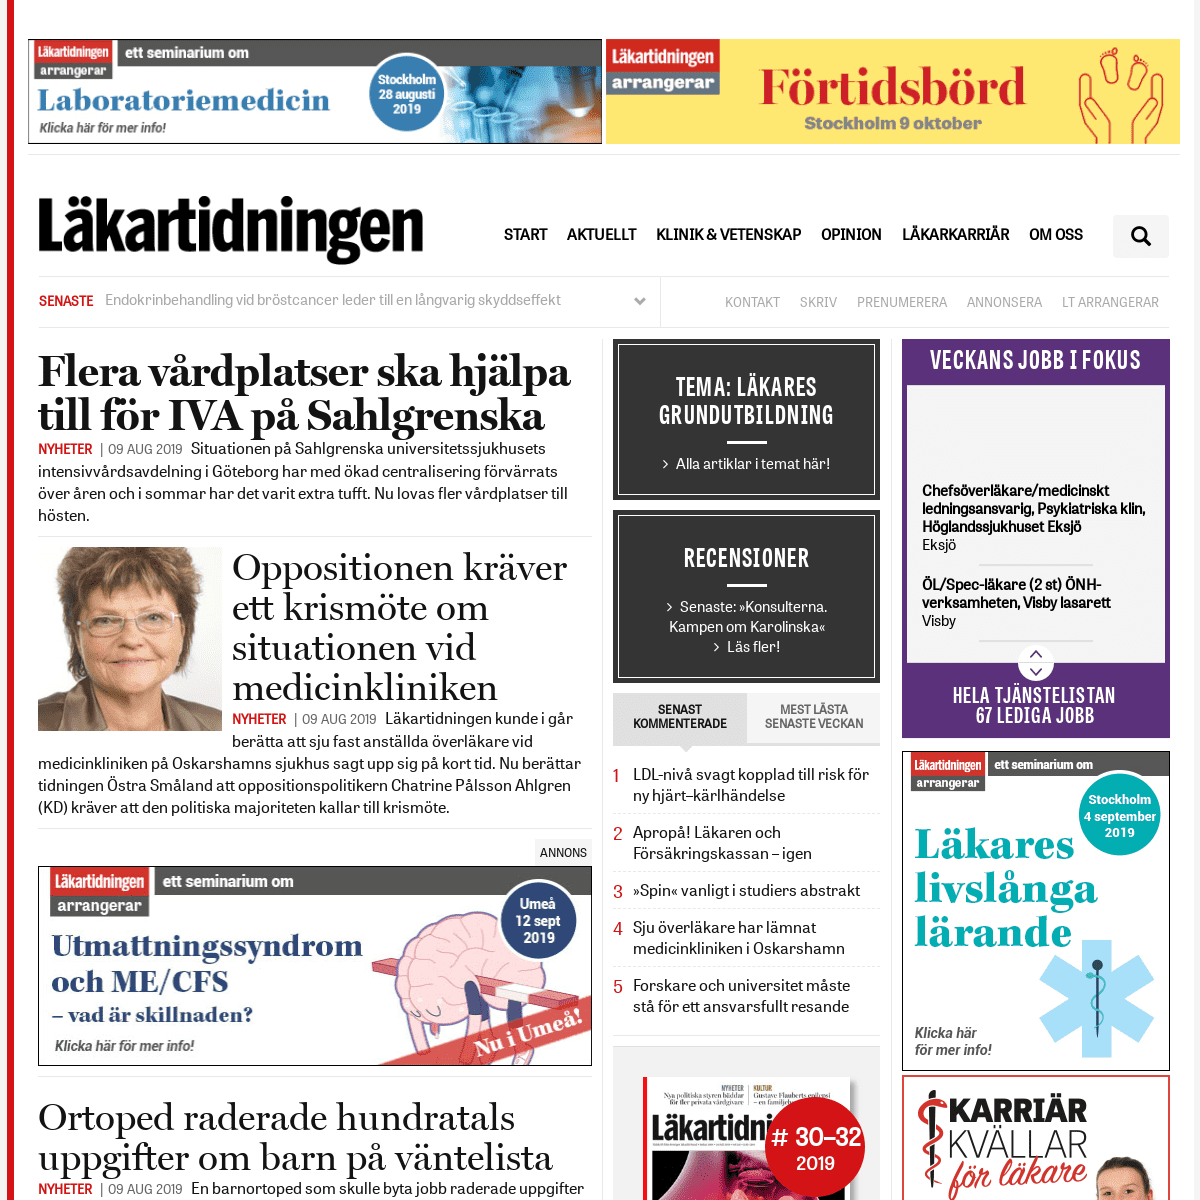 A complete backup of lakartidningen.se